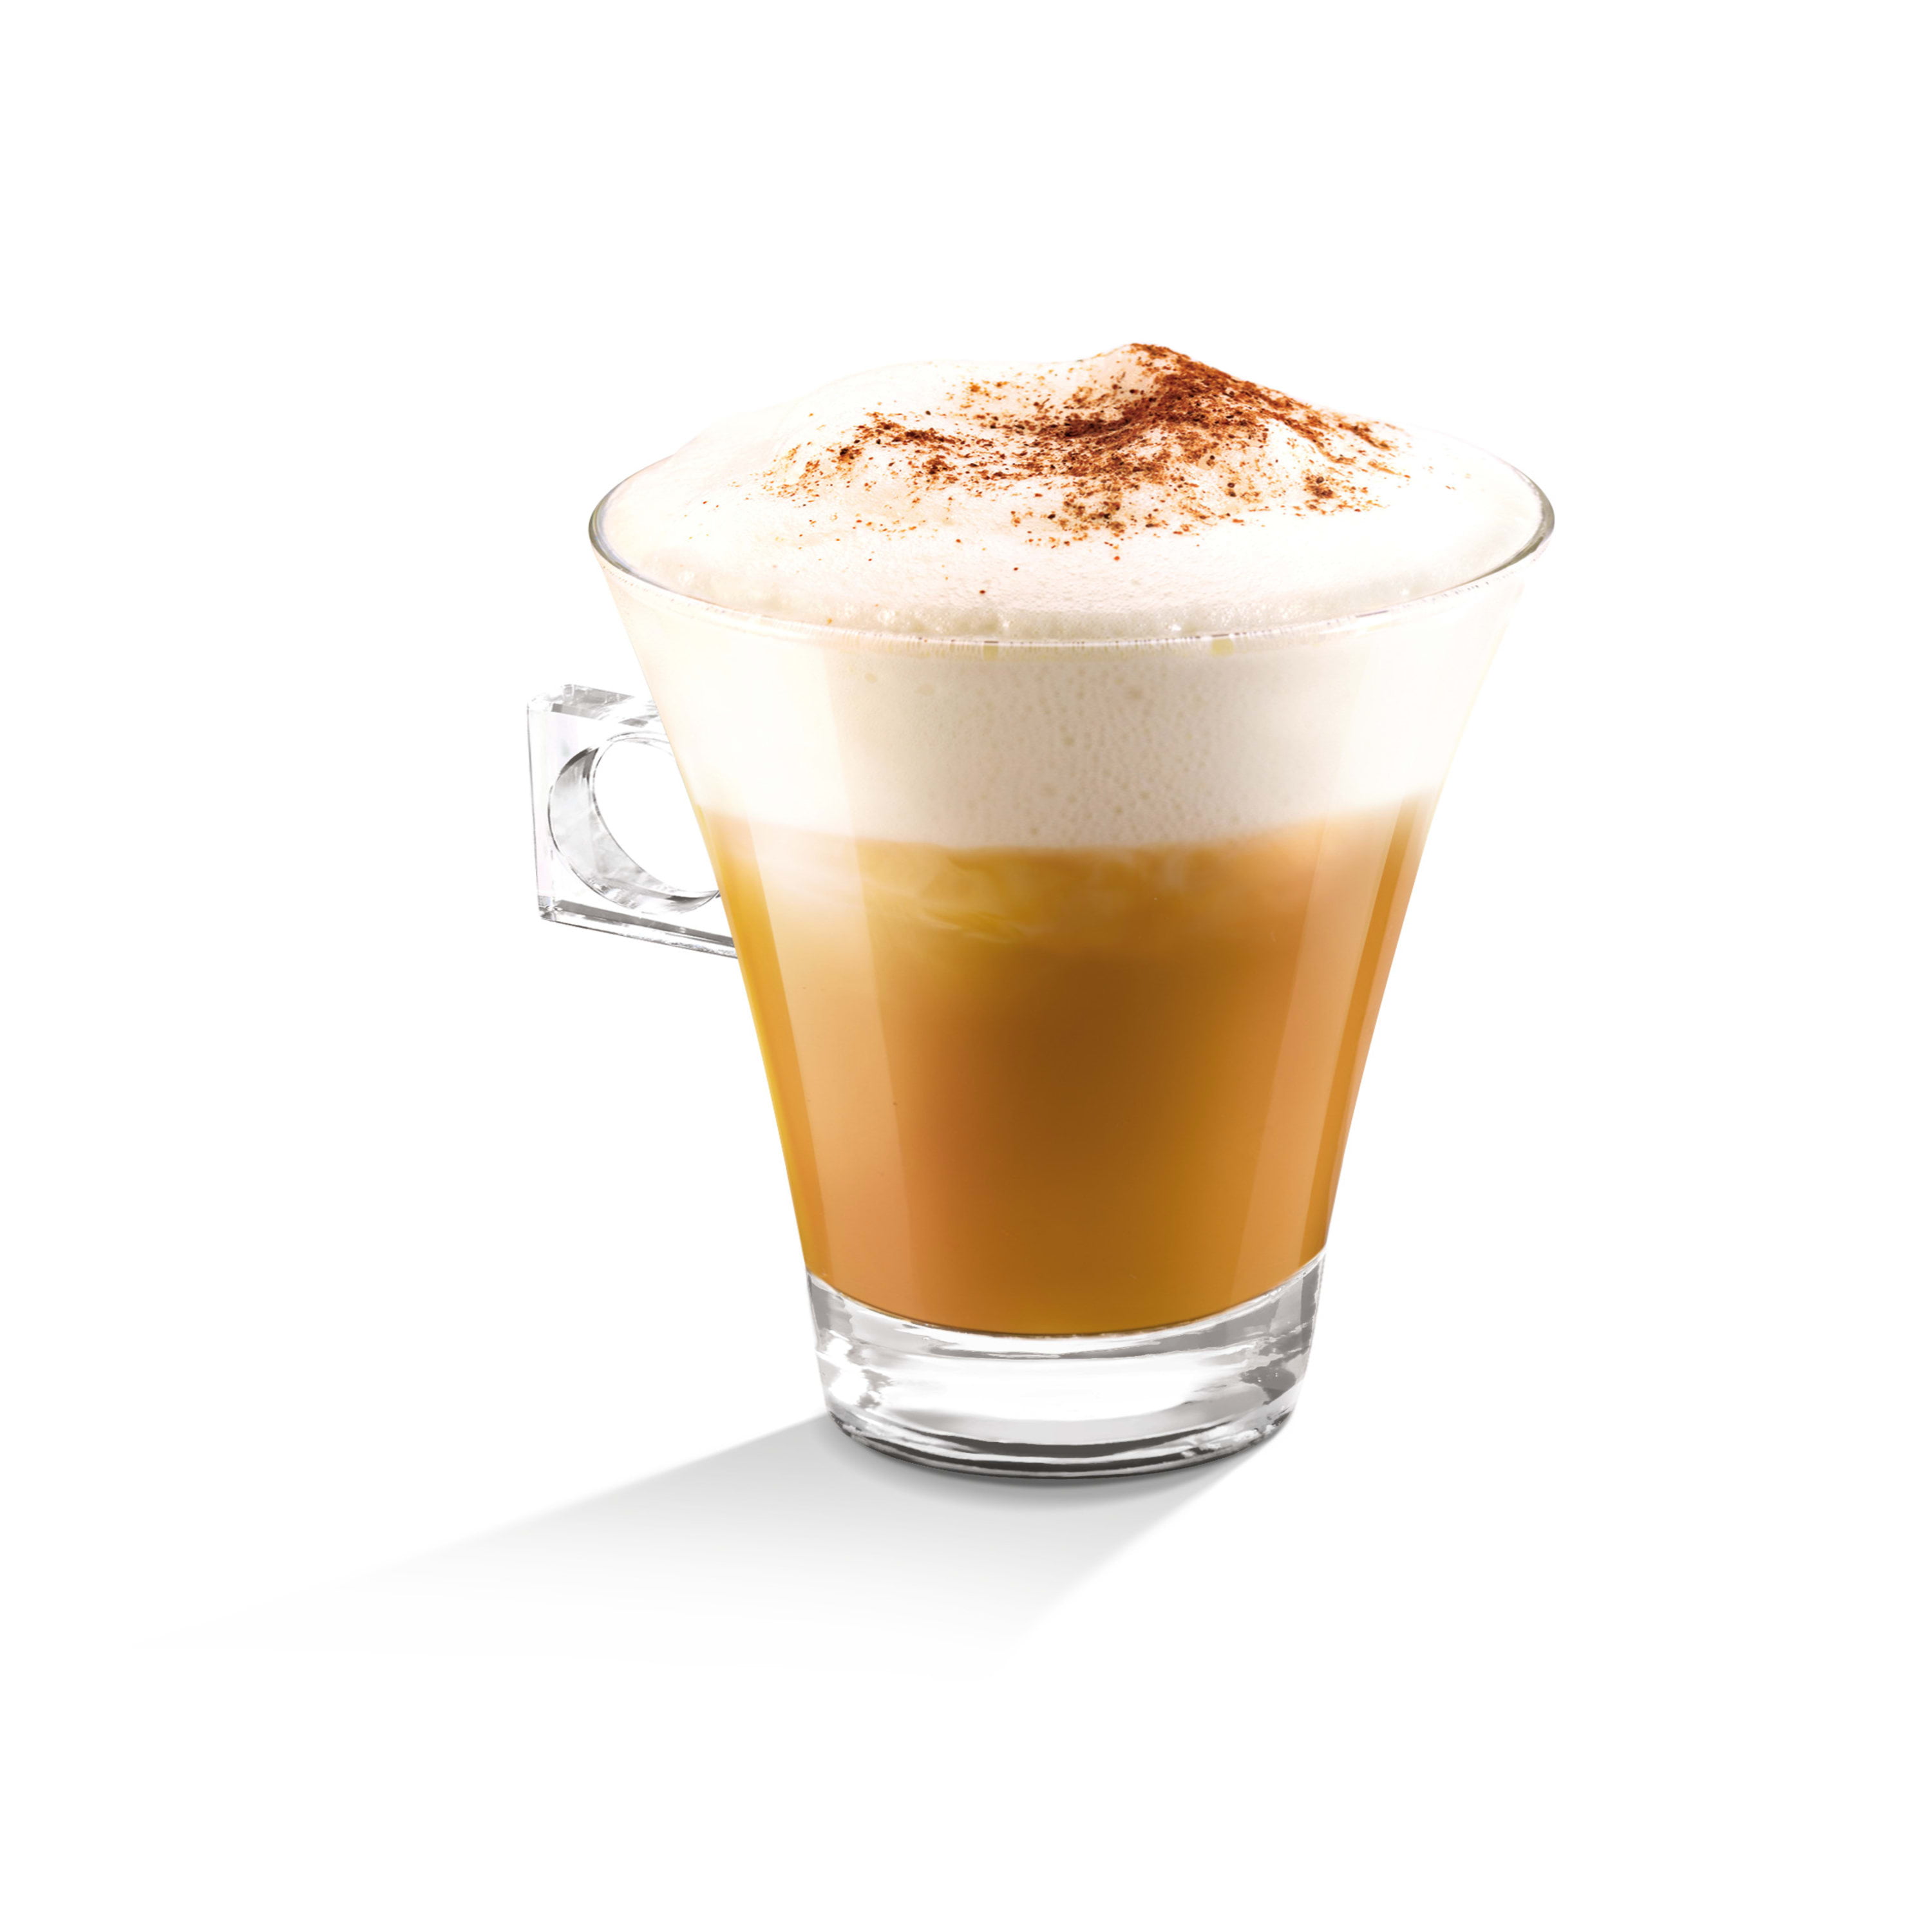 NESCAFÉ DOLCE GUSTO Intense Espresso Coffee - Your Spanish Corner